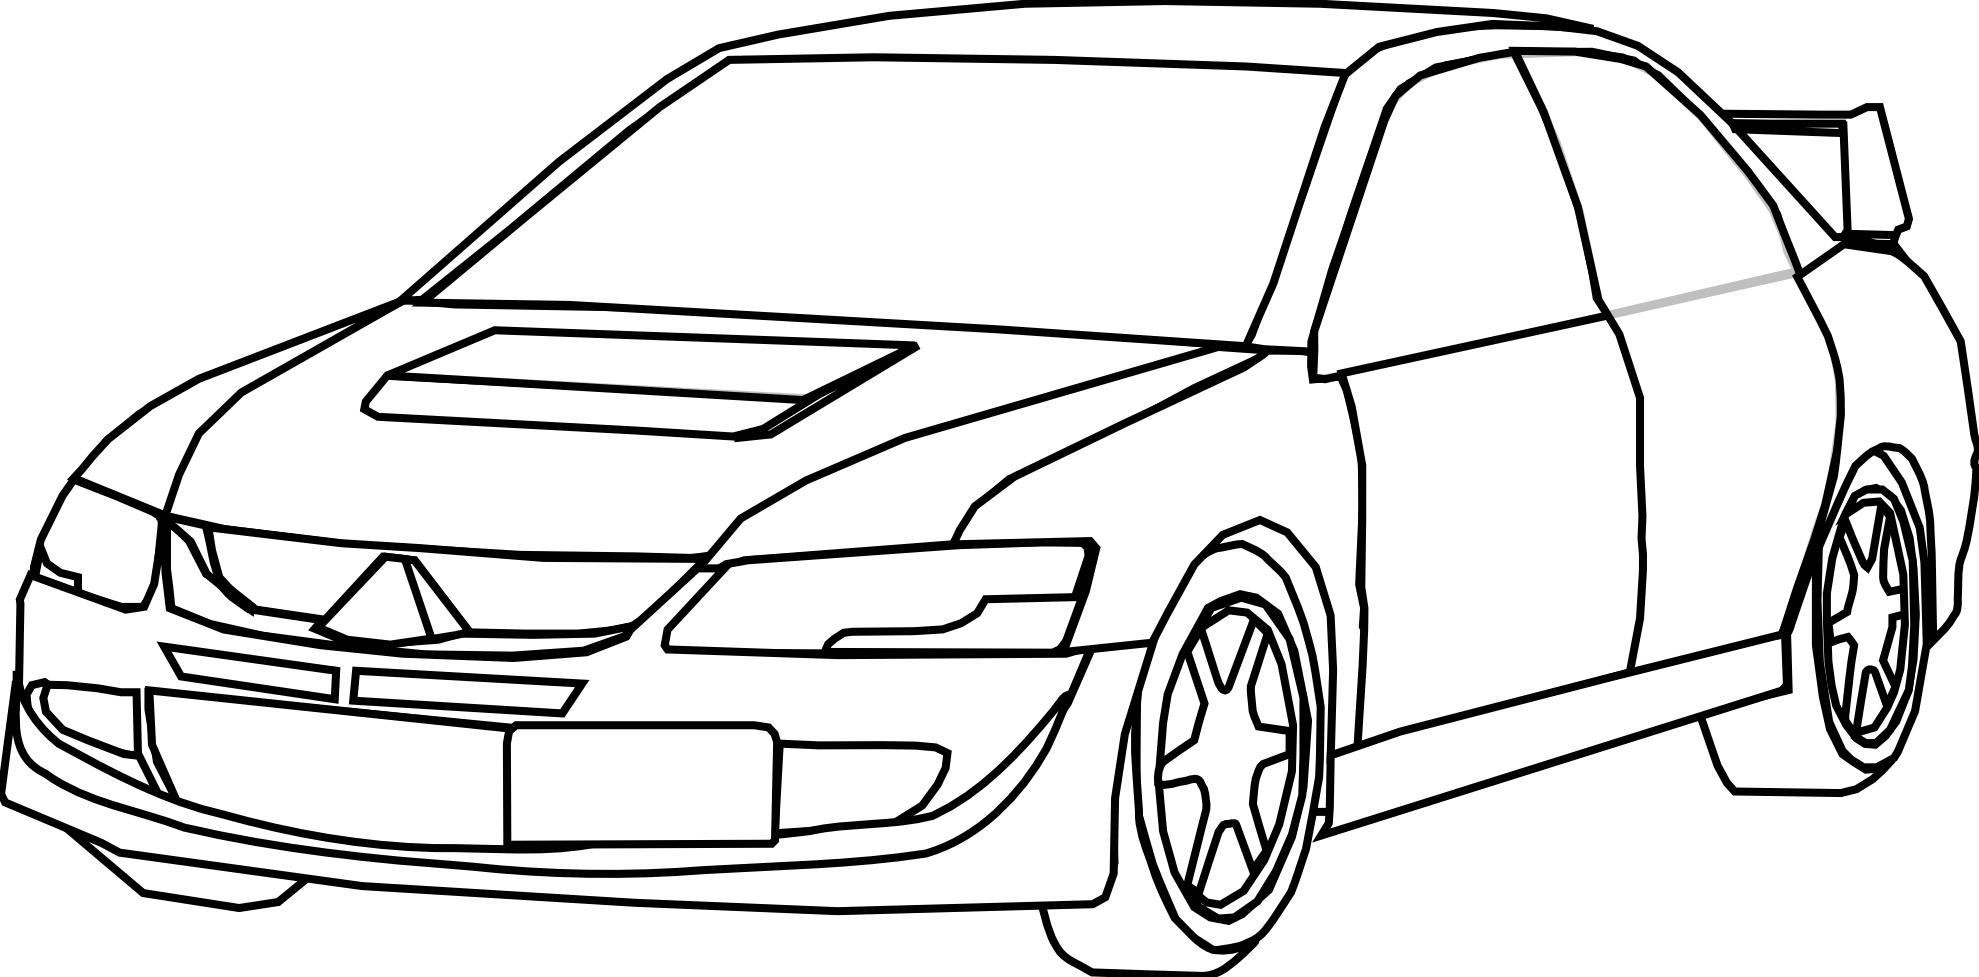 Раскраска Мицубиси Лансер Эволюшн. Раскраска Митсубиси Эволюшн. Mitsubishi Lancer Evolution 8 раскраска. Mitsubishi Lancer Evolution x раскраска.